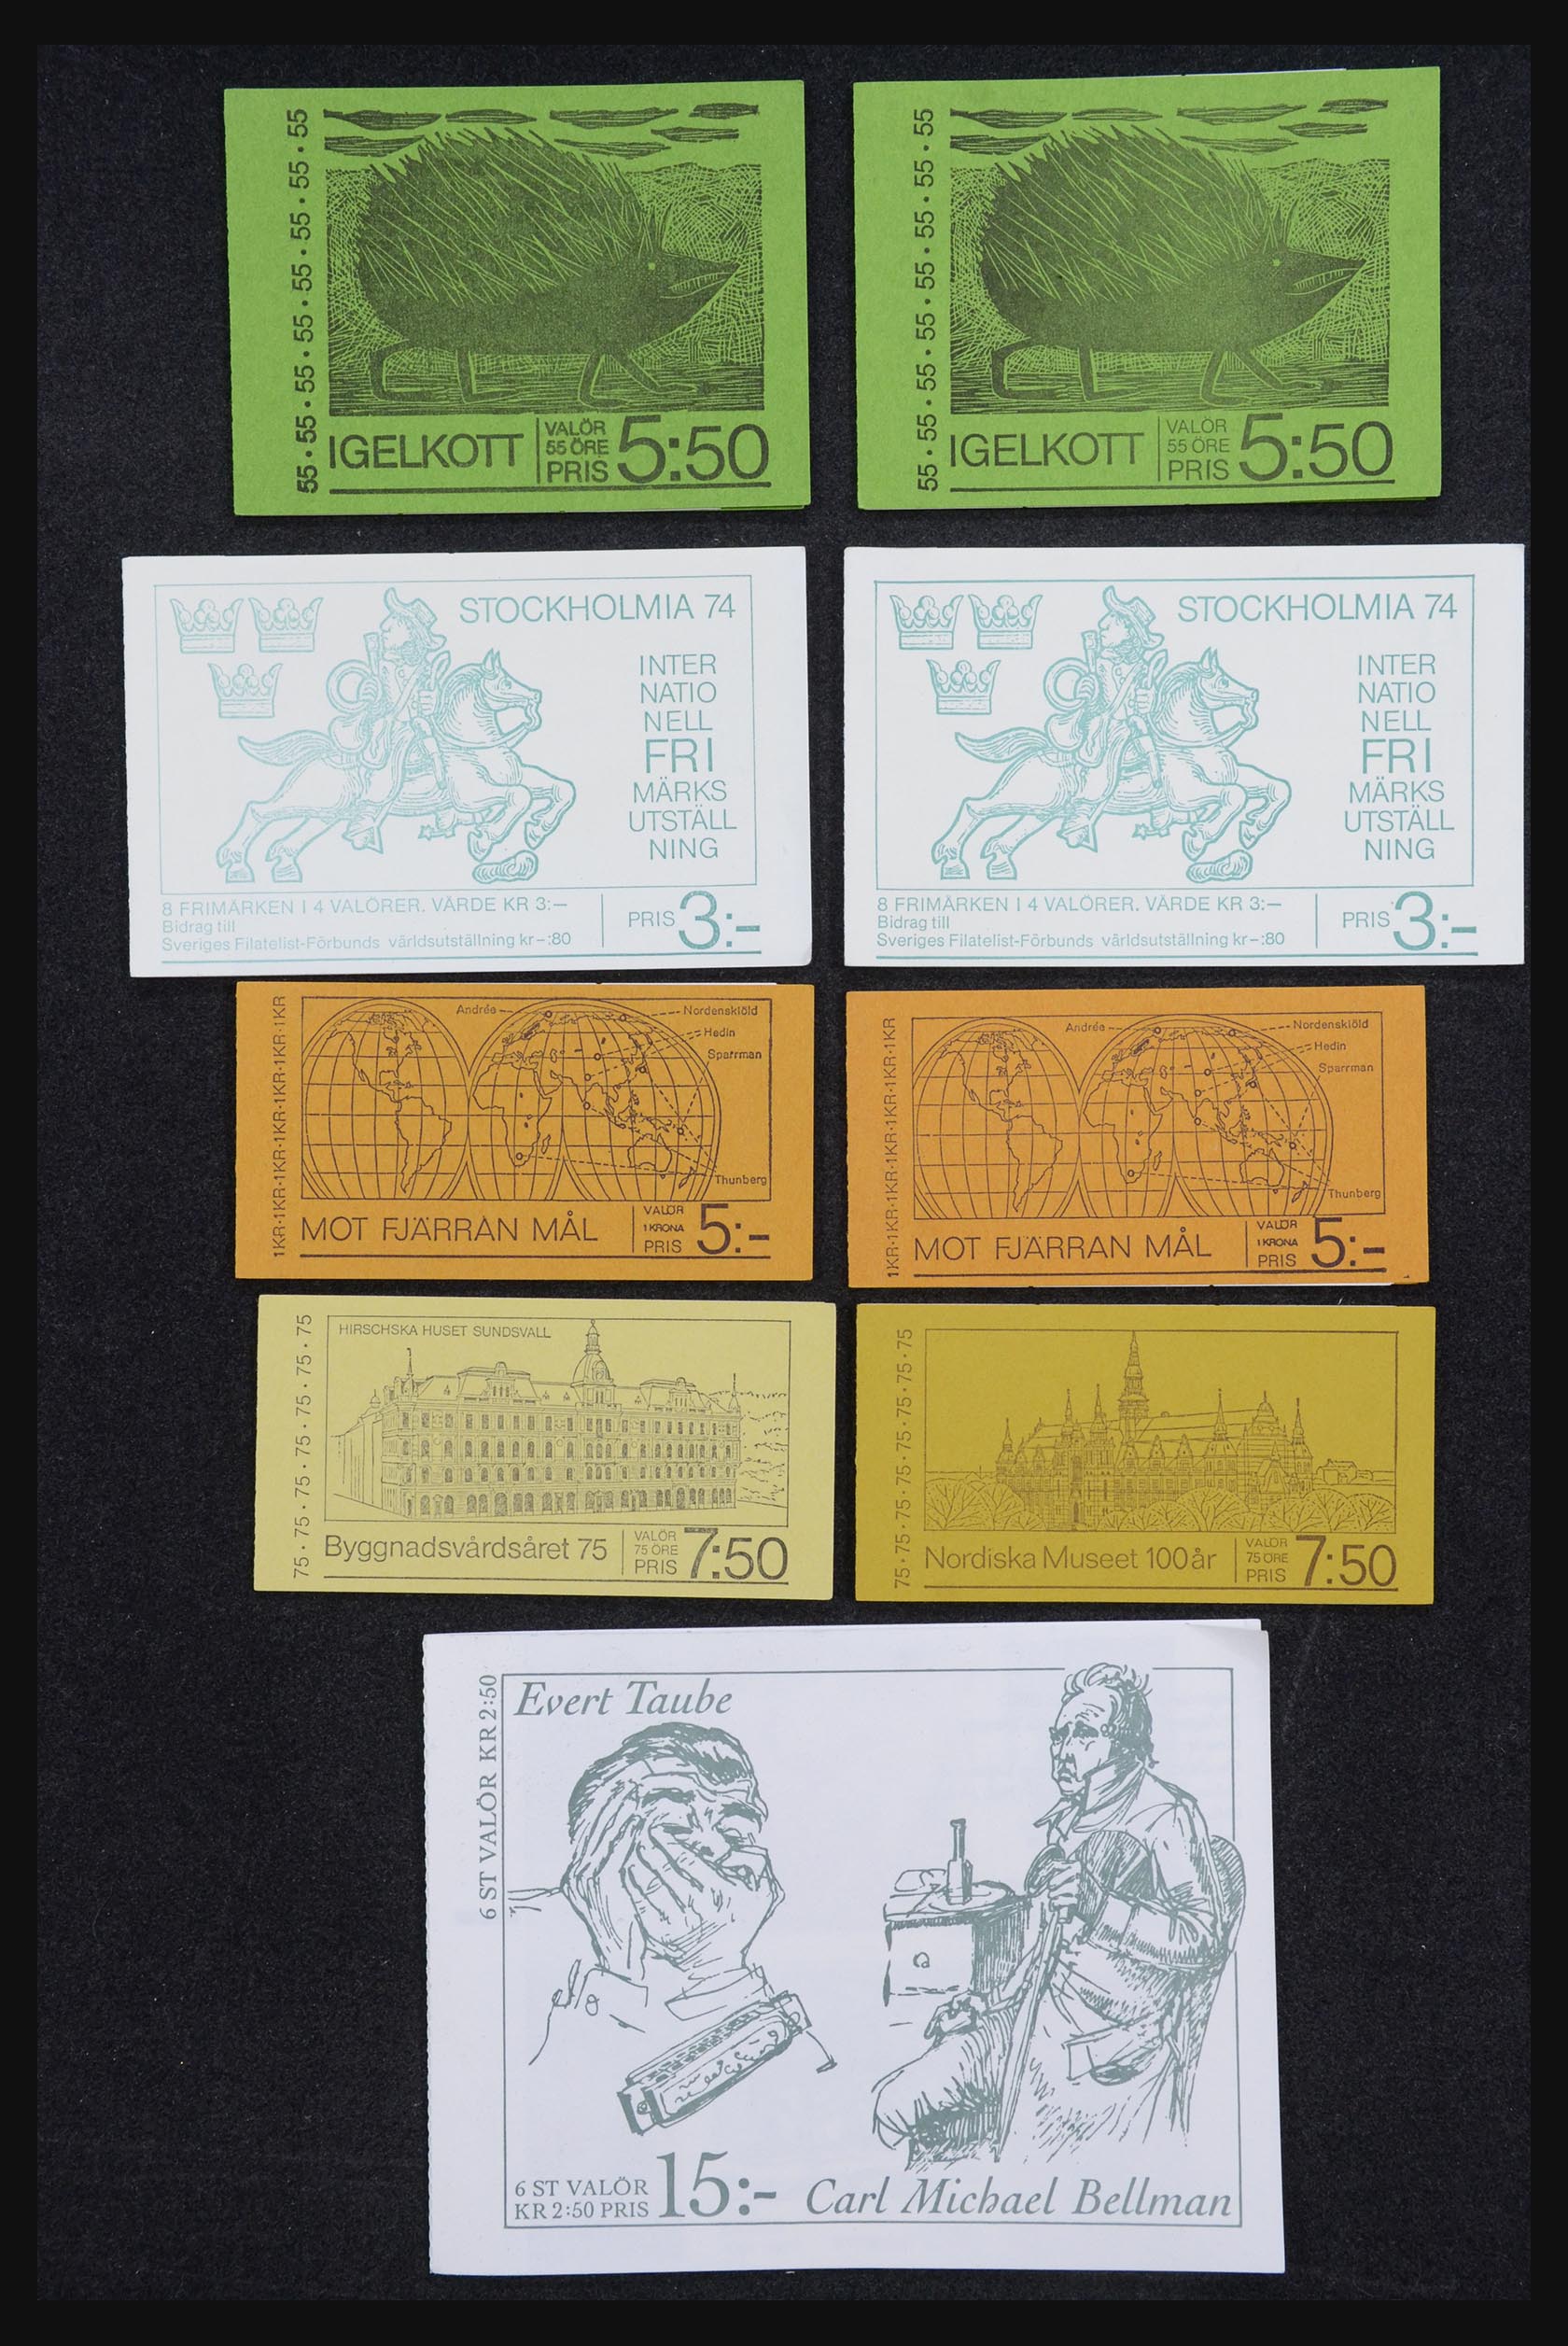 32026 024 - 32026 Sweden stampbooklets 1949-1990.